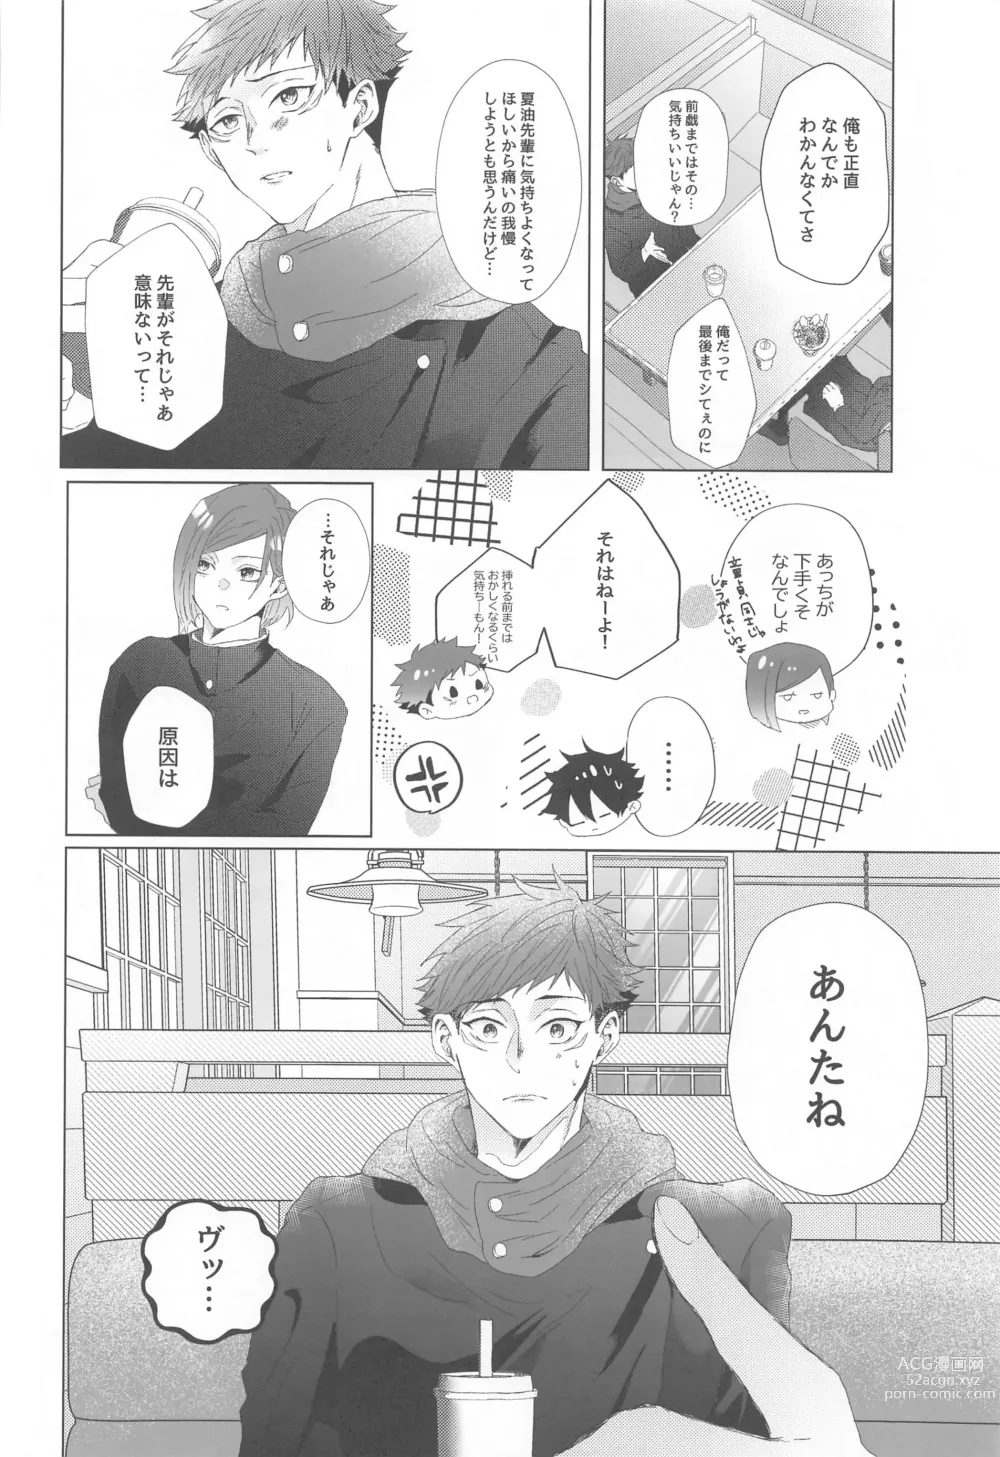 Page 9 of doujinshi Senpai, Anone.